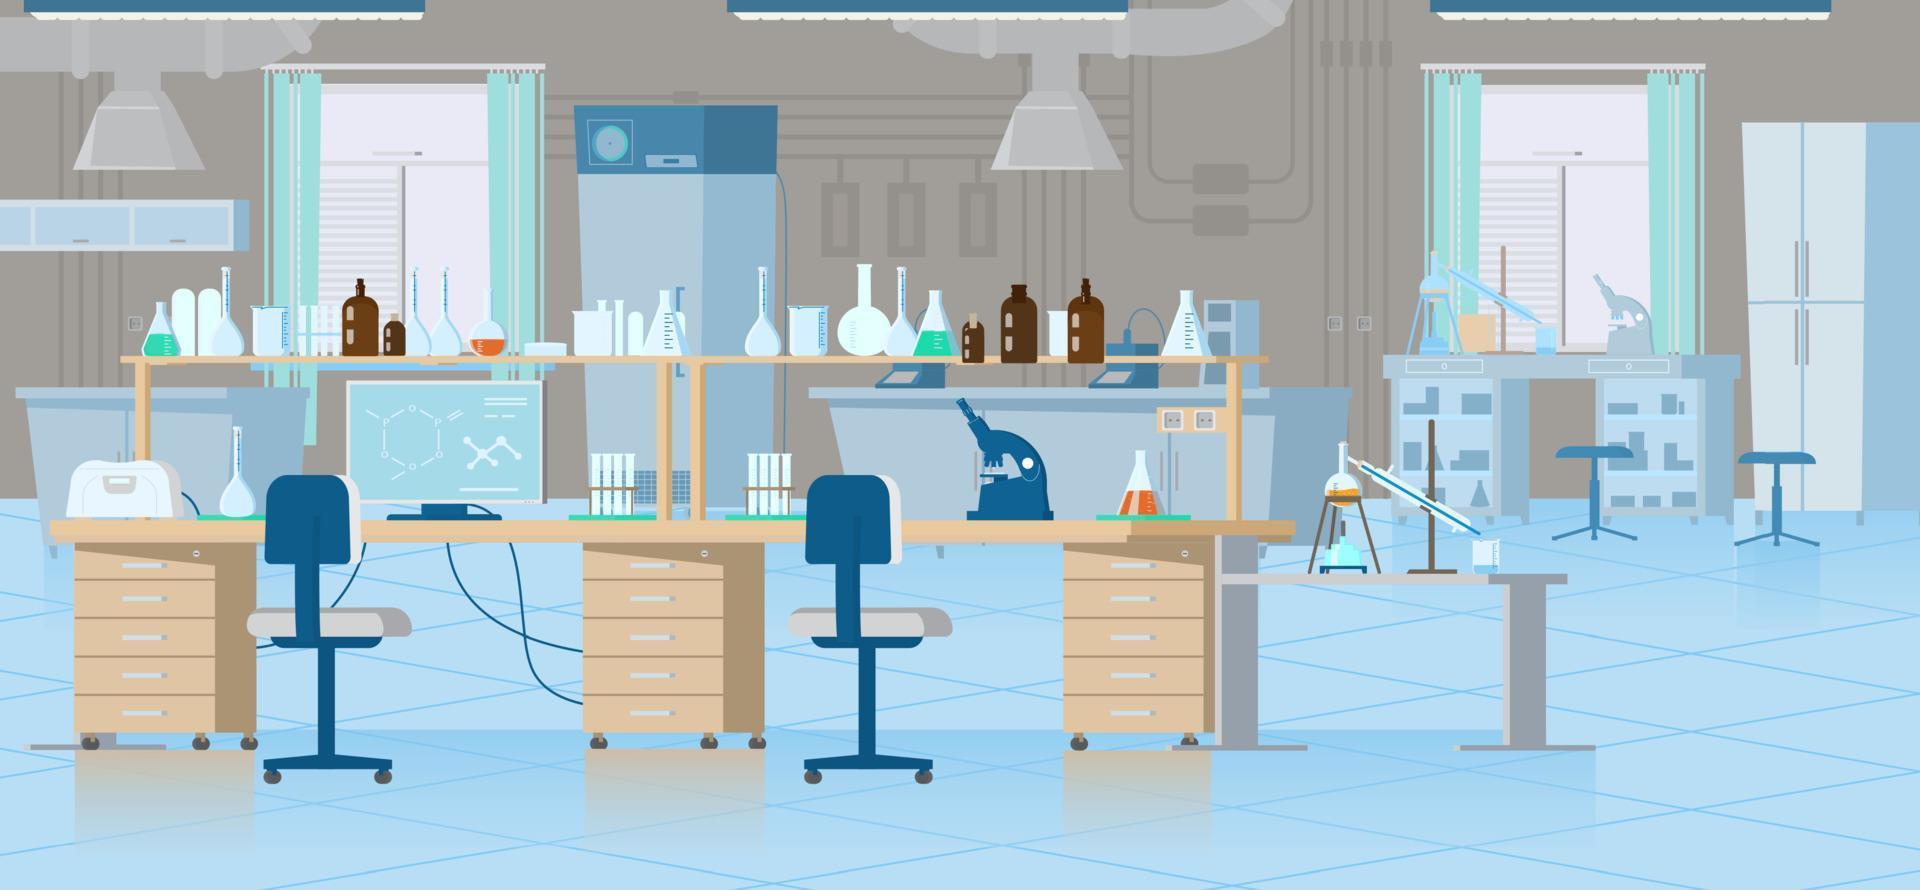 vektor kemisk laboratorium interiör med Utrustning. arbetsplats med flaskor, reagenser, mikroskop, dator etc. platt illustration.